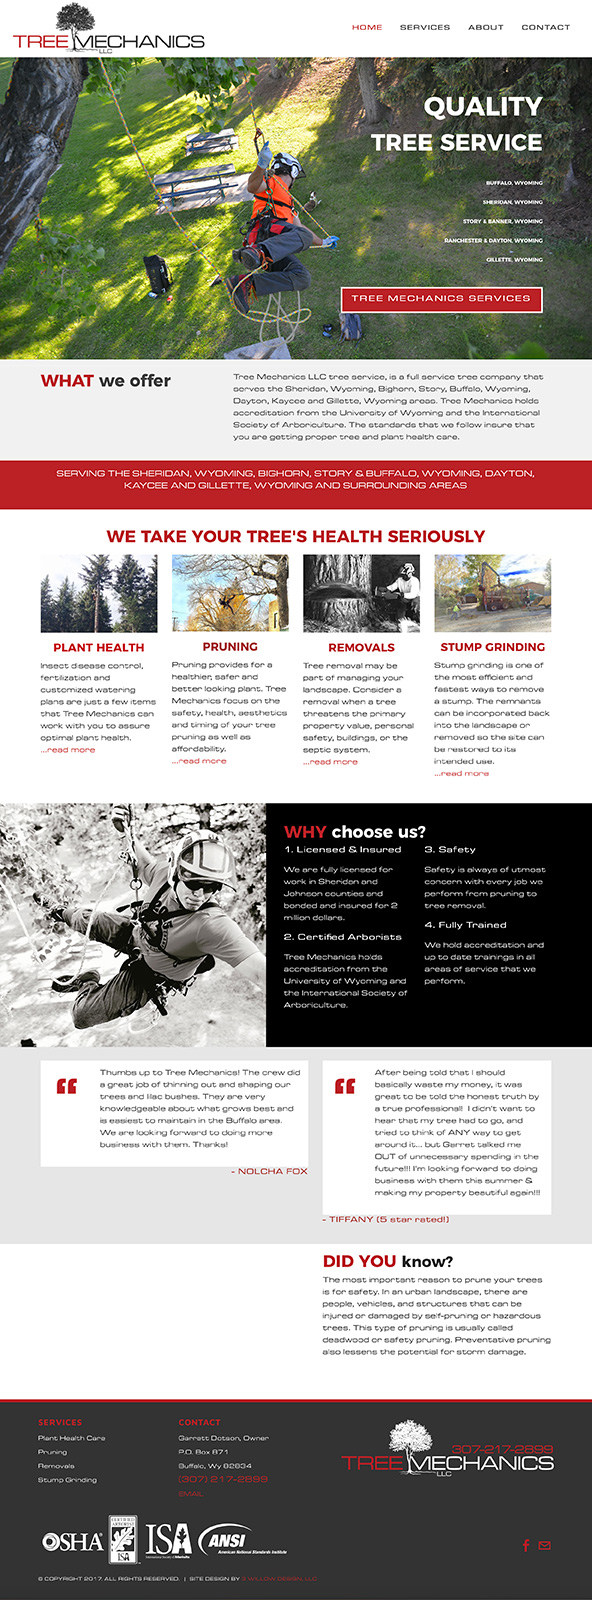 Tree Mechanics website home page